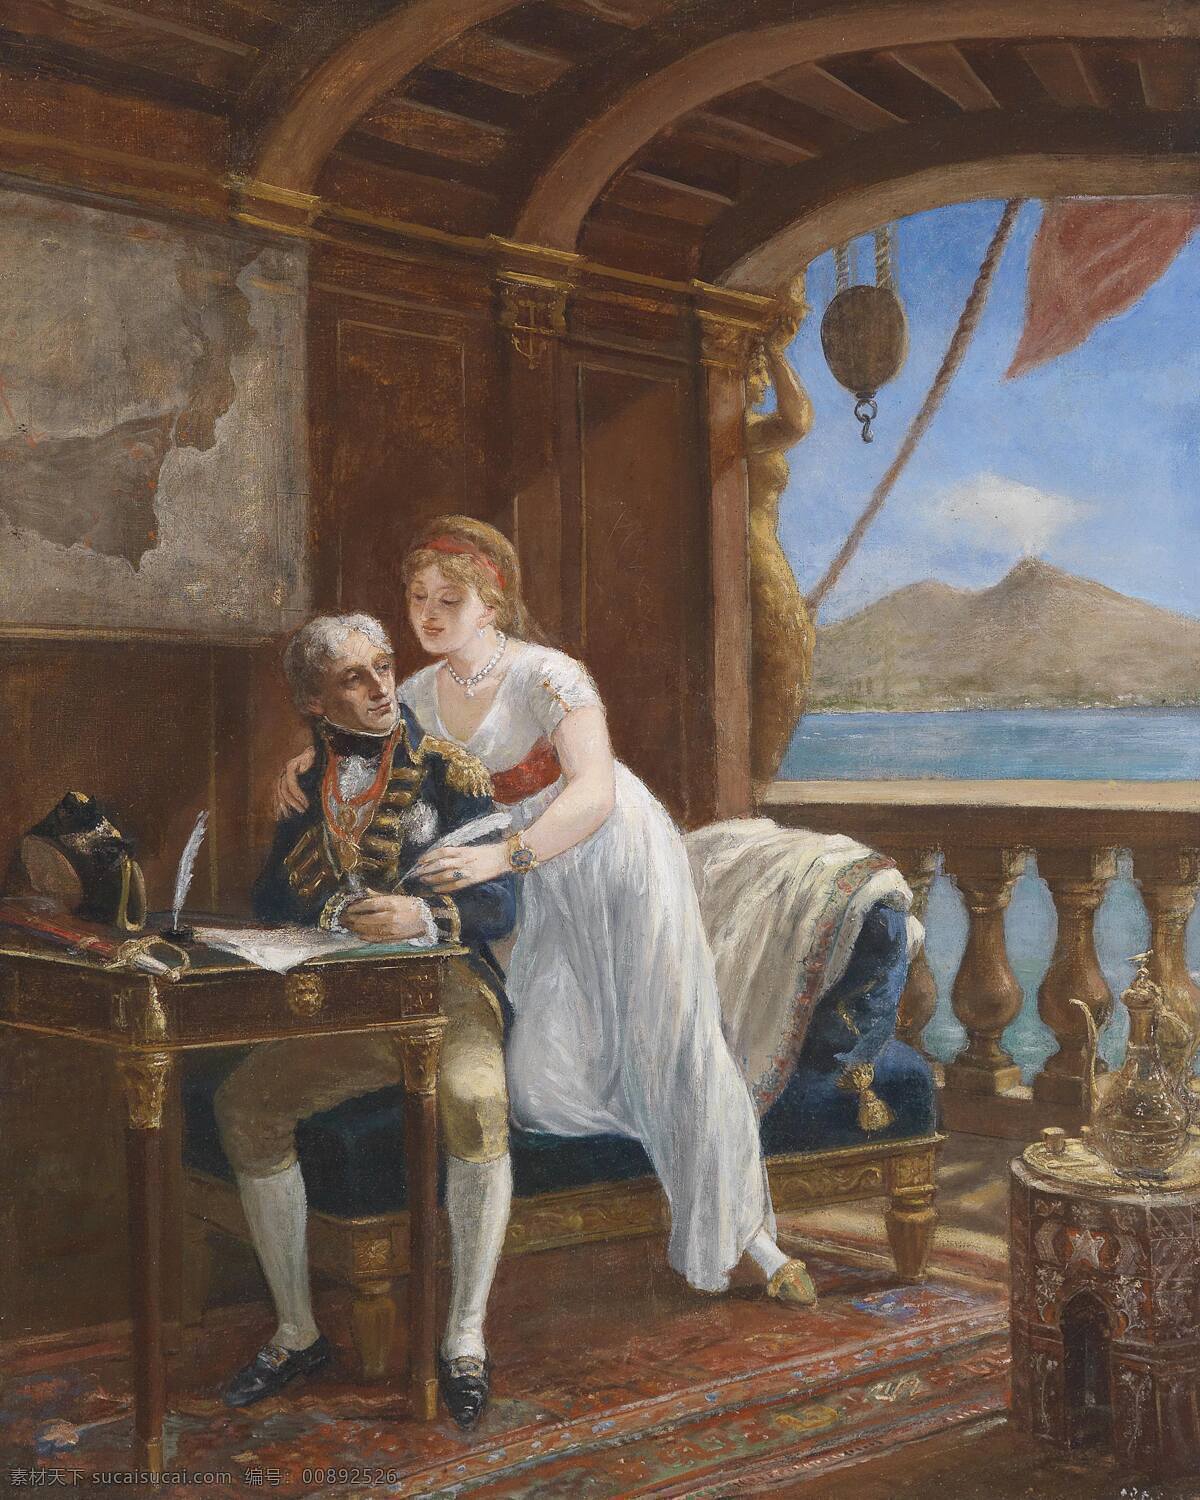 夫妇 绘画书法 文化艺术 意大利 油画 尼尔逊 海军 上将 夫人 世纪 下半叶 那不勒斯 悠闲的生活 19世纪油画 汉密尔顿 装饰素材